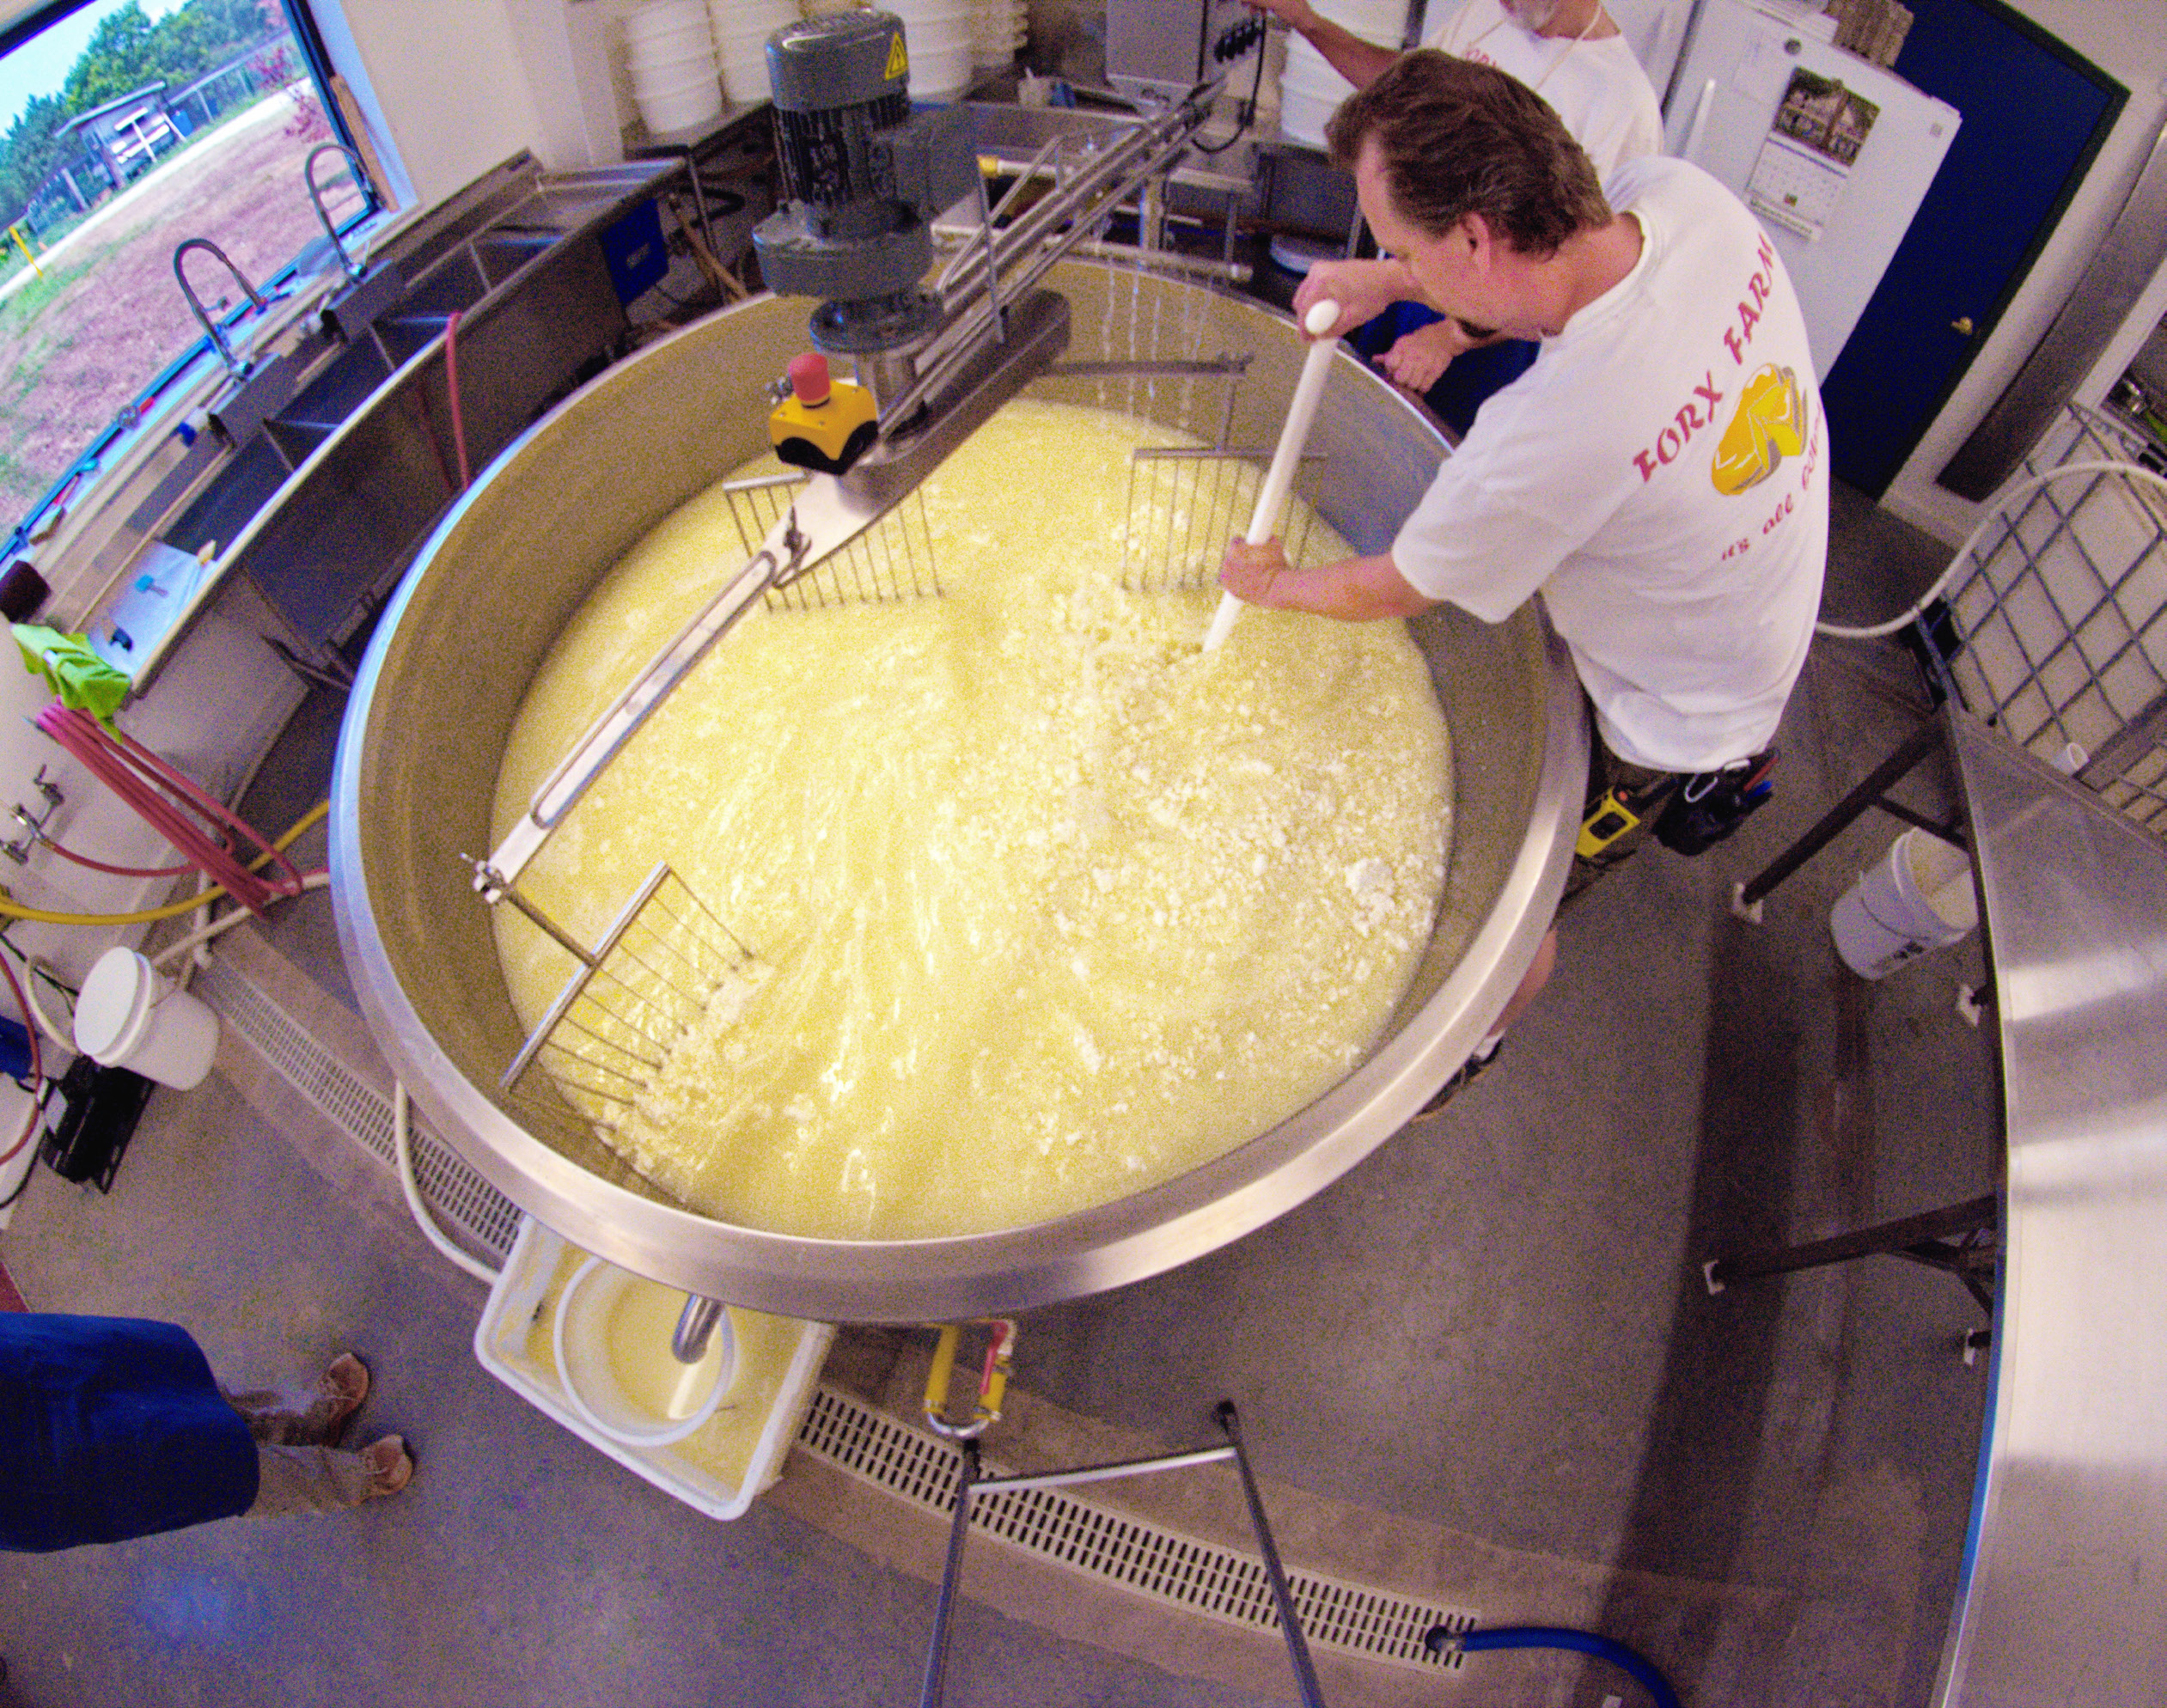 Stirring a vat of liquid